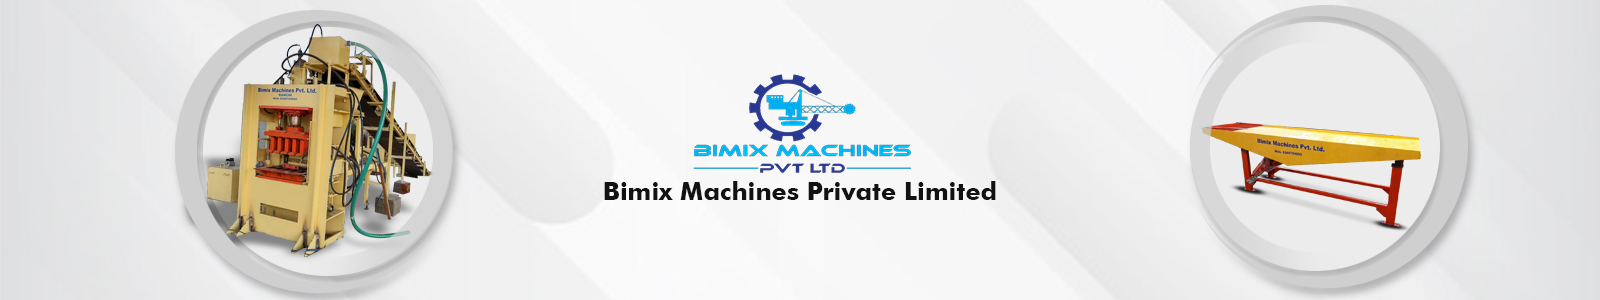 Bimix Machines Private Limited